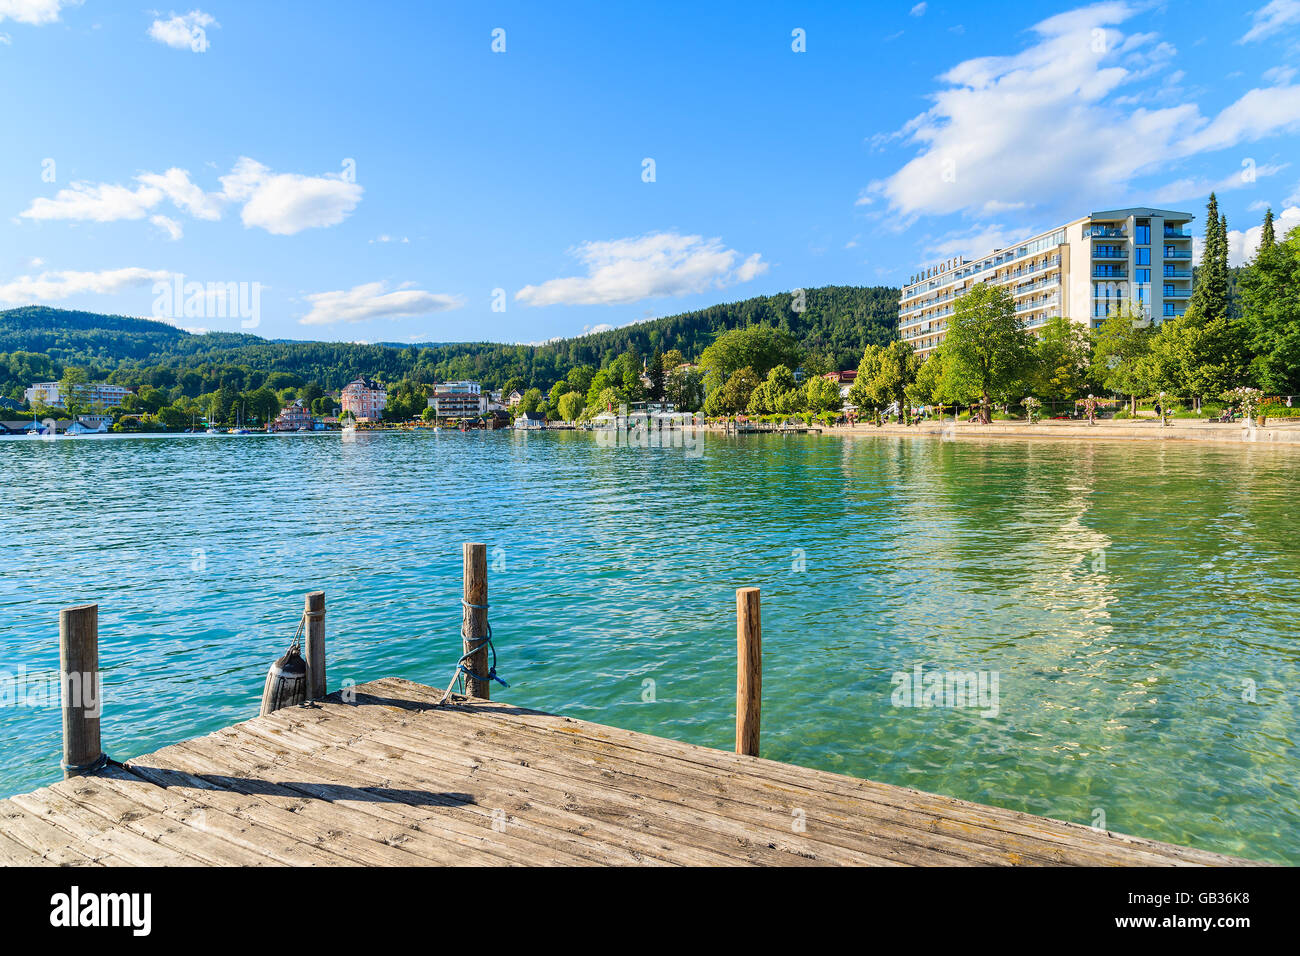 Wörthersee LAKE, Österreich - 20. Juni 2015: hölzerne Pier und Hotelgebäude Wörthersee Seeufer entlang in der Sommersaison. Stockfoto